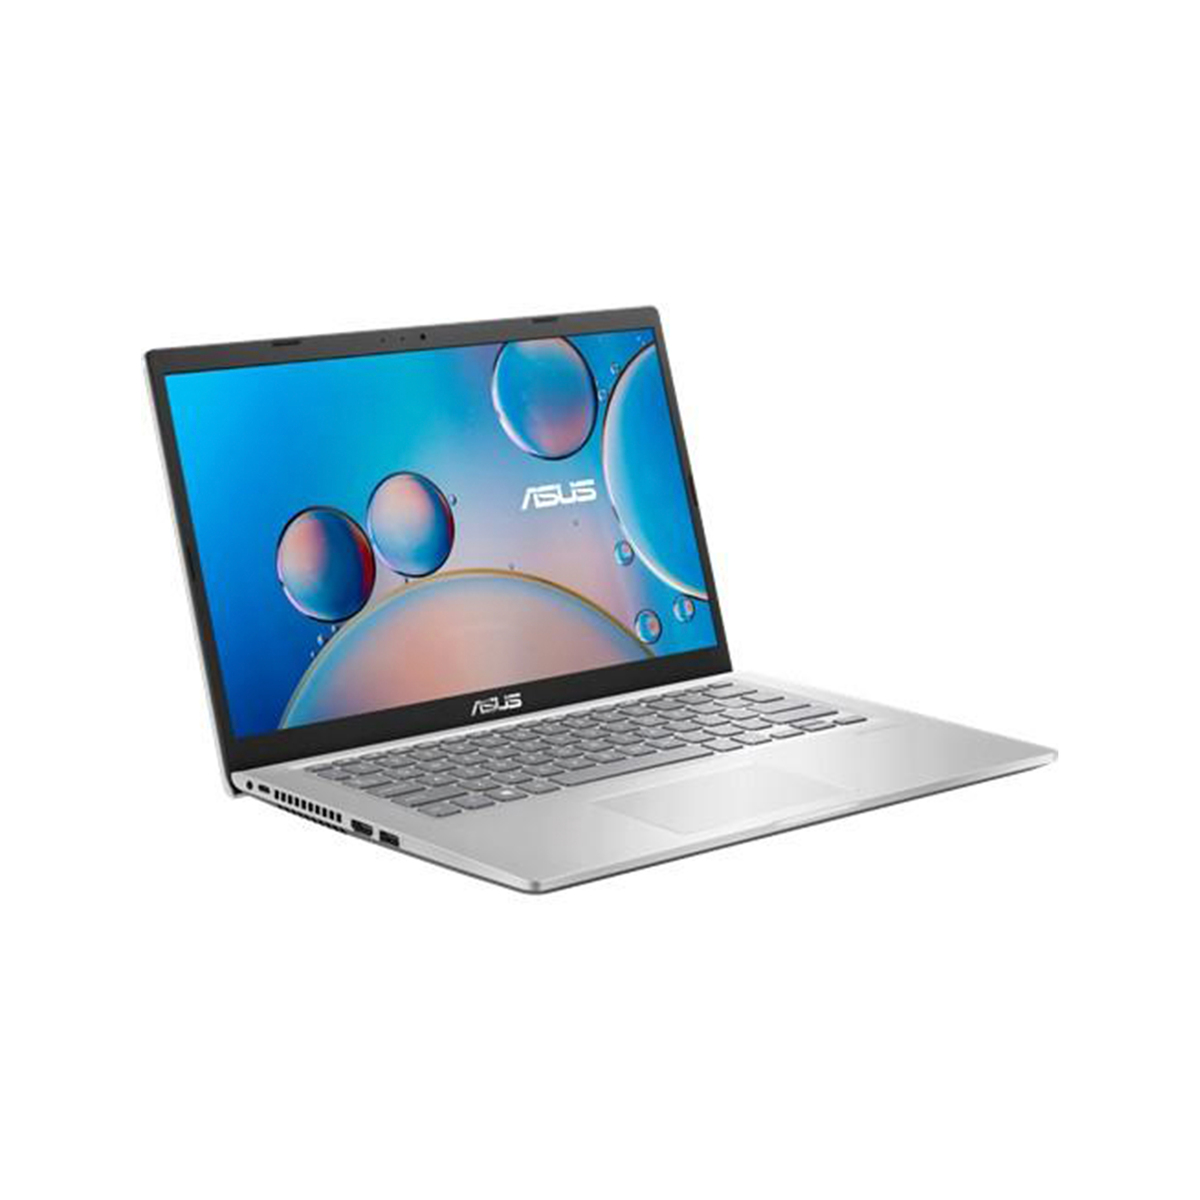 Asus Notebook X415JP-EK016T,Intel Core i5,8GB RAM,512GB SSD,2GB Graphics,14.0" FHD,Windows 10,Silver